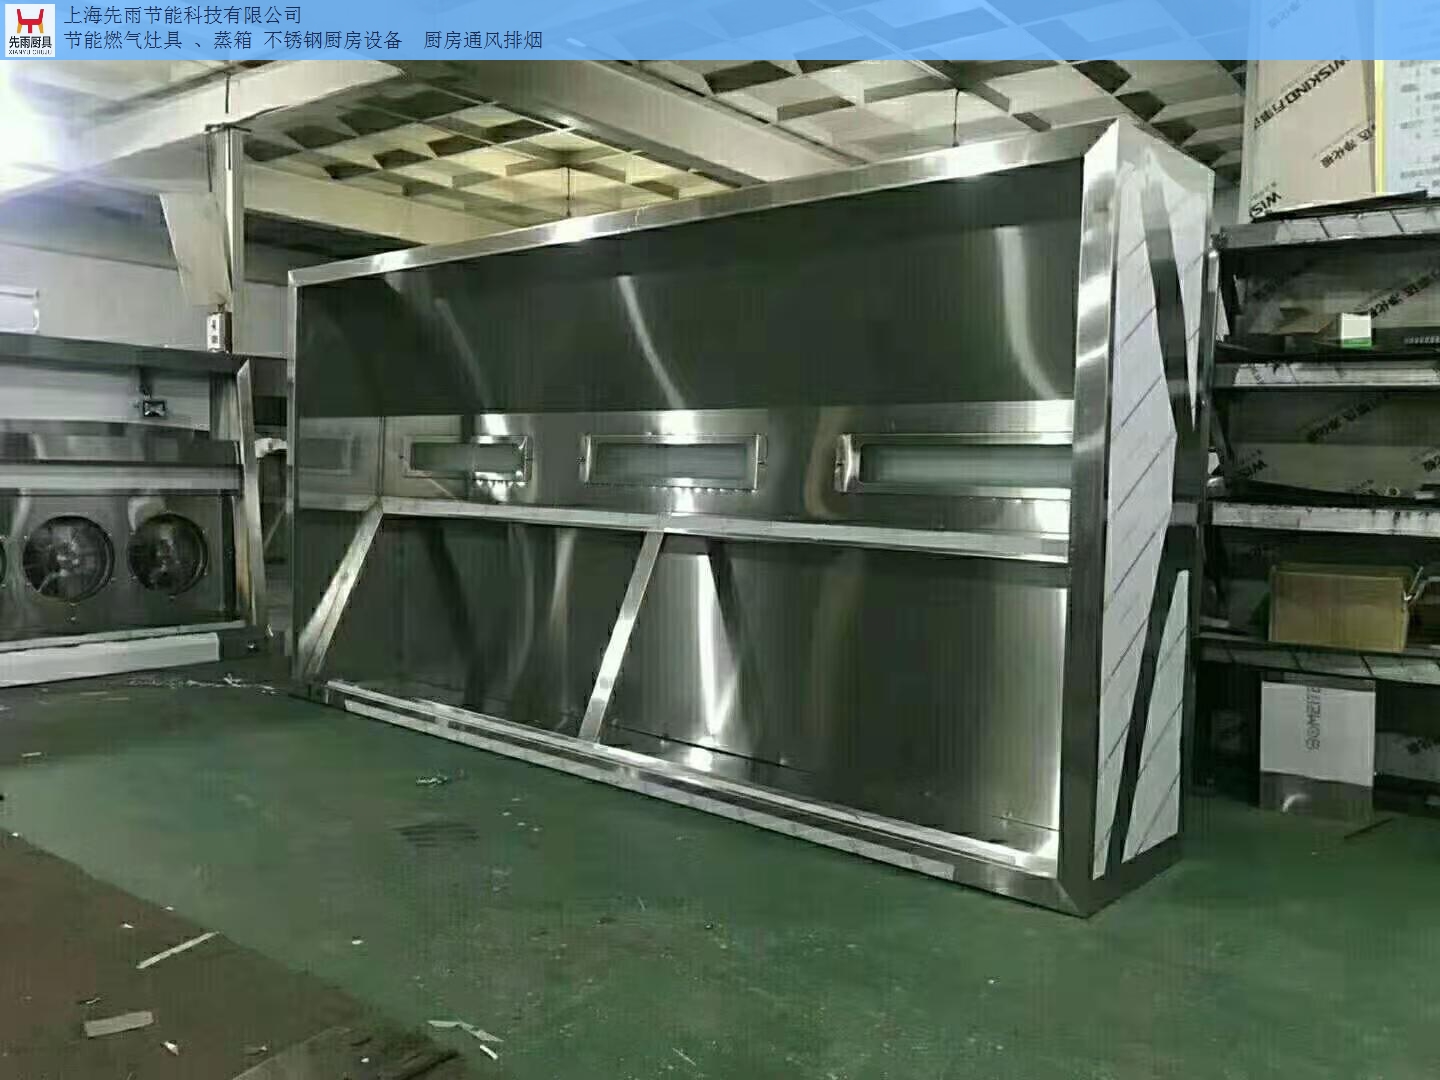 上海杨浦区厨房通风排烟风管 上海先雨厨具厨房工程供应